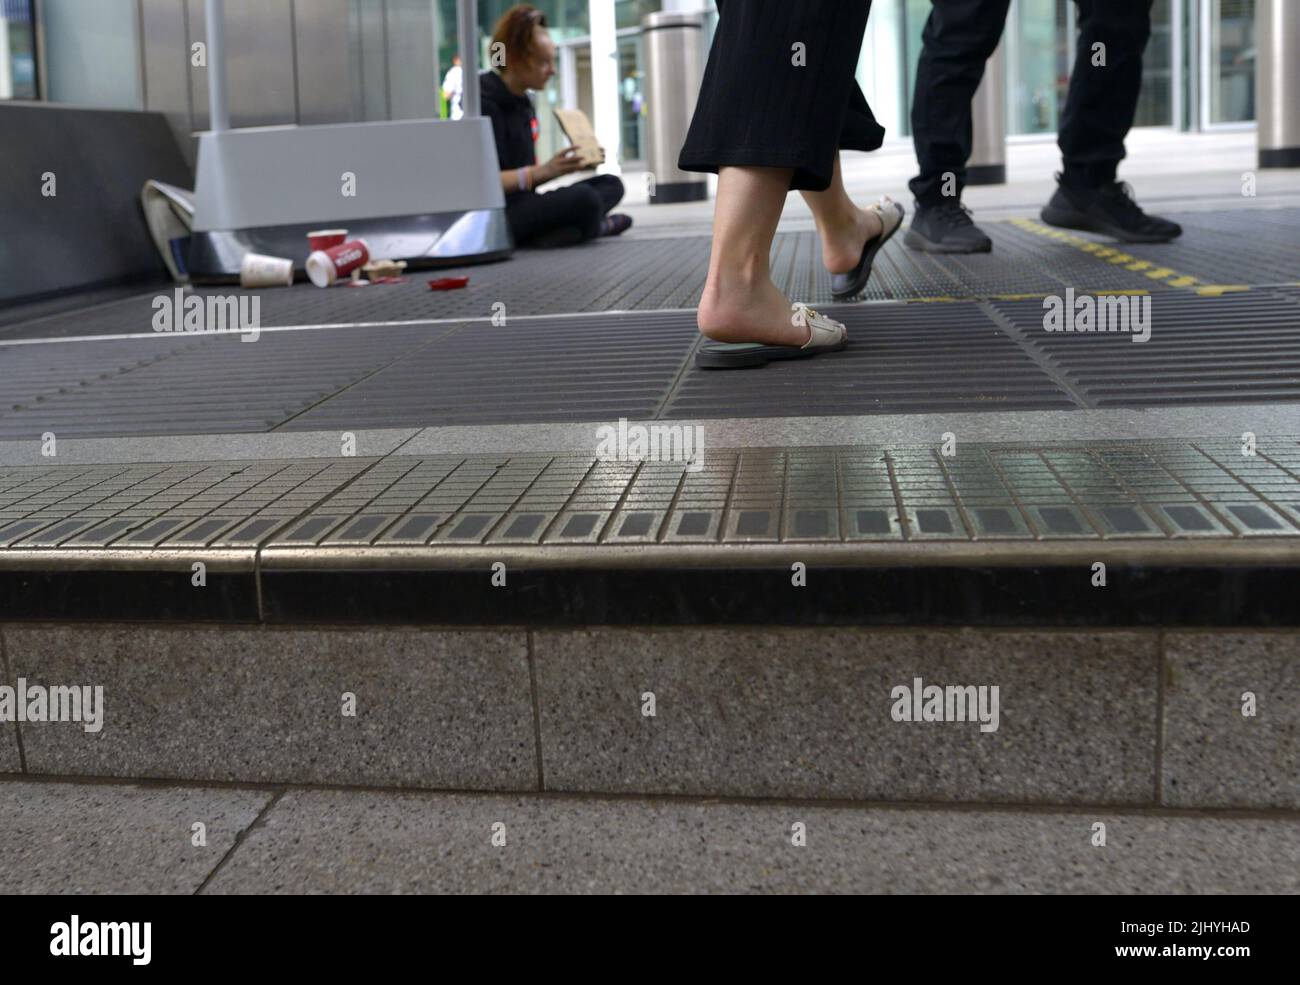 Londra, Inghilterra, Regno Unito. La gente che cammina davanti a una persona senza tetto che implora sui gradini della stazione della metropolitana Victoria Foto Stock